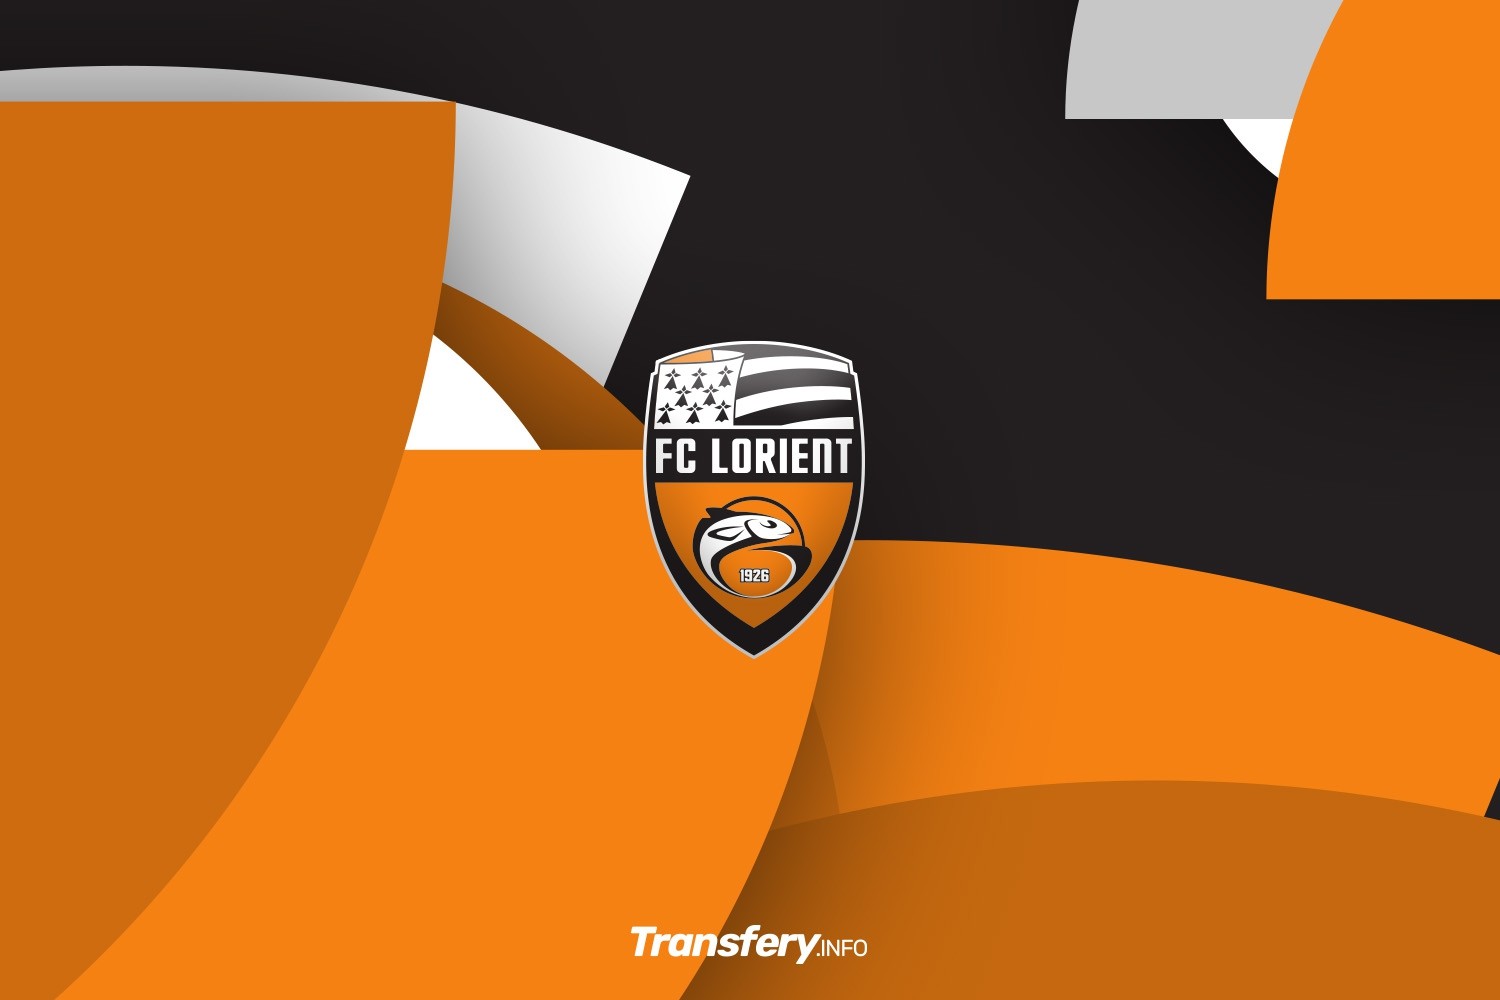 OFICJALNIE: Lorient nie pozwala na odejście trenera. Zdecydowała sprawa z przeszłości?!